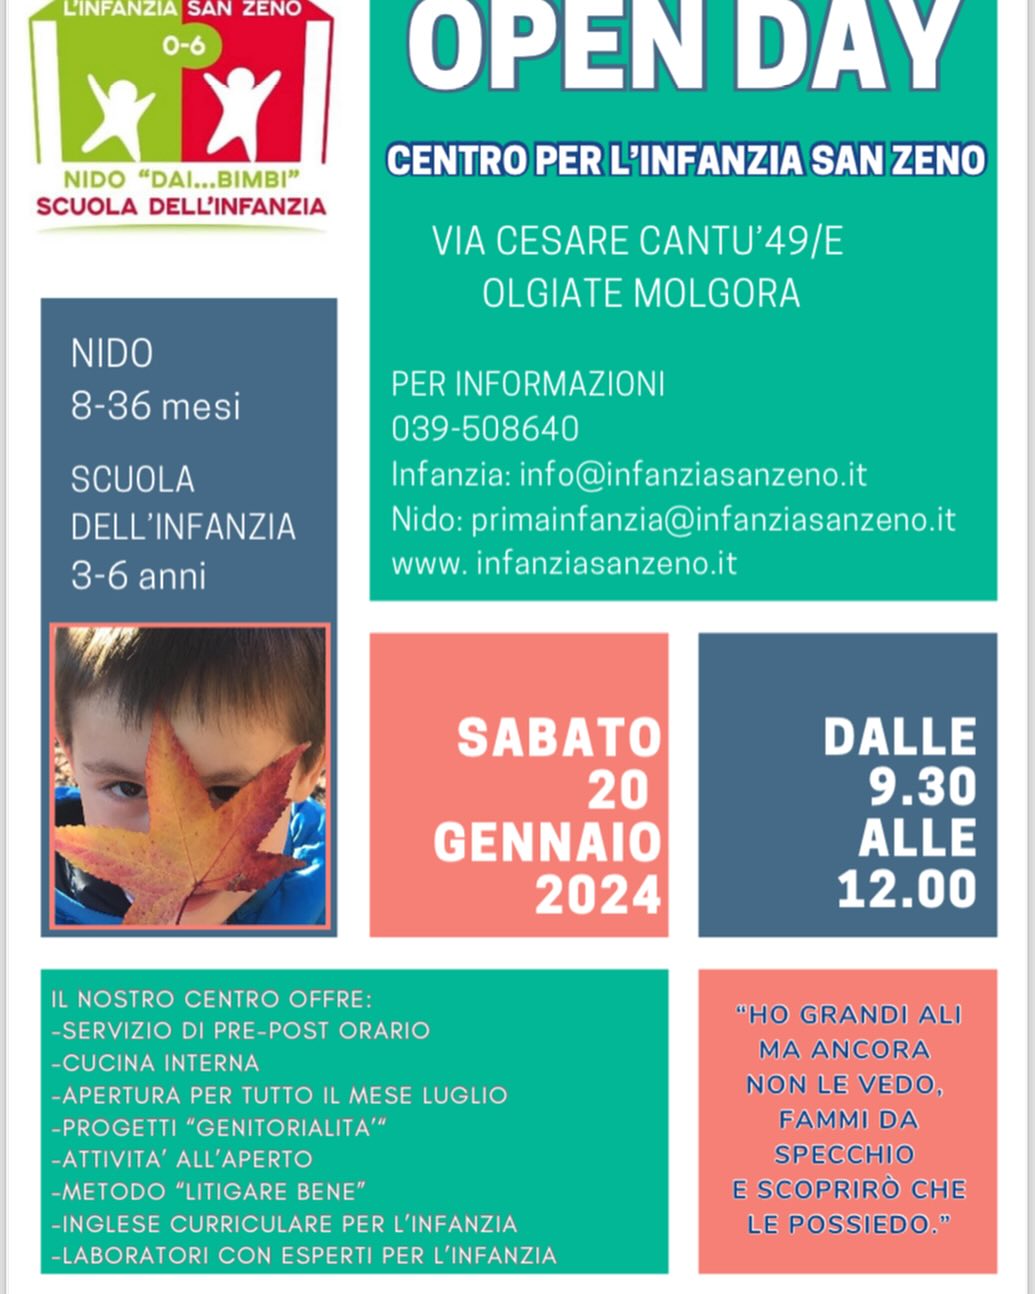 Open day 24 - Centro per l'Infanzia San Zeno